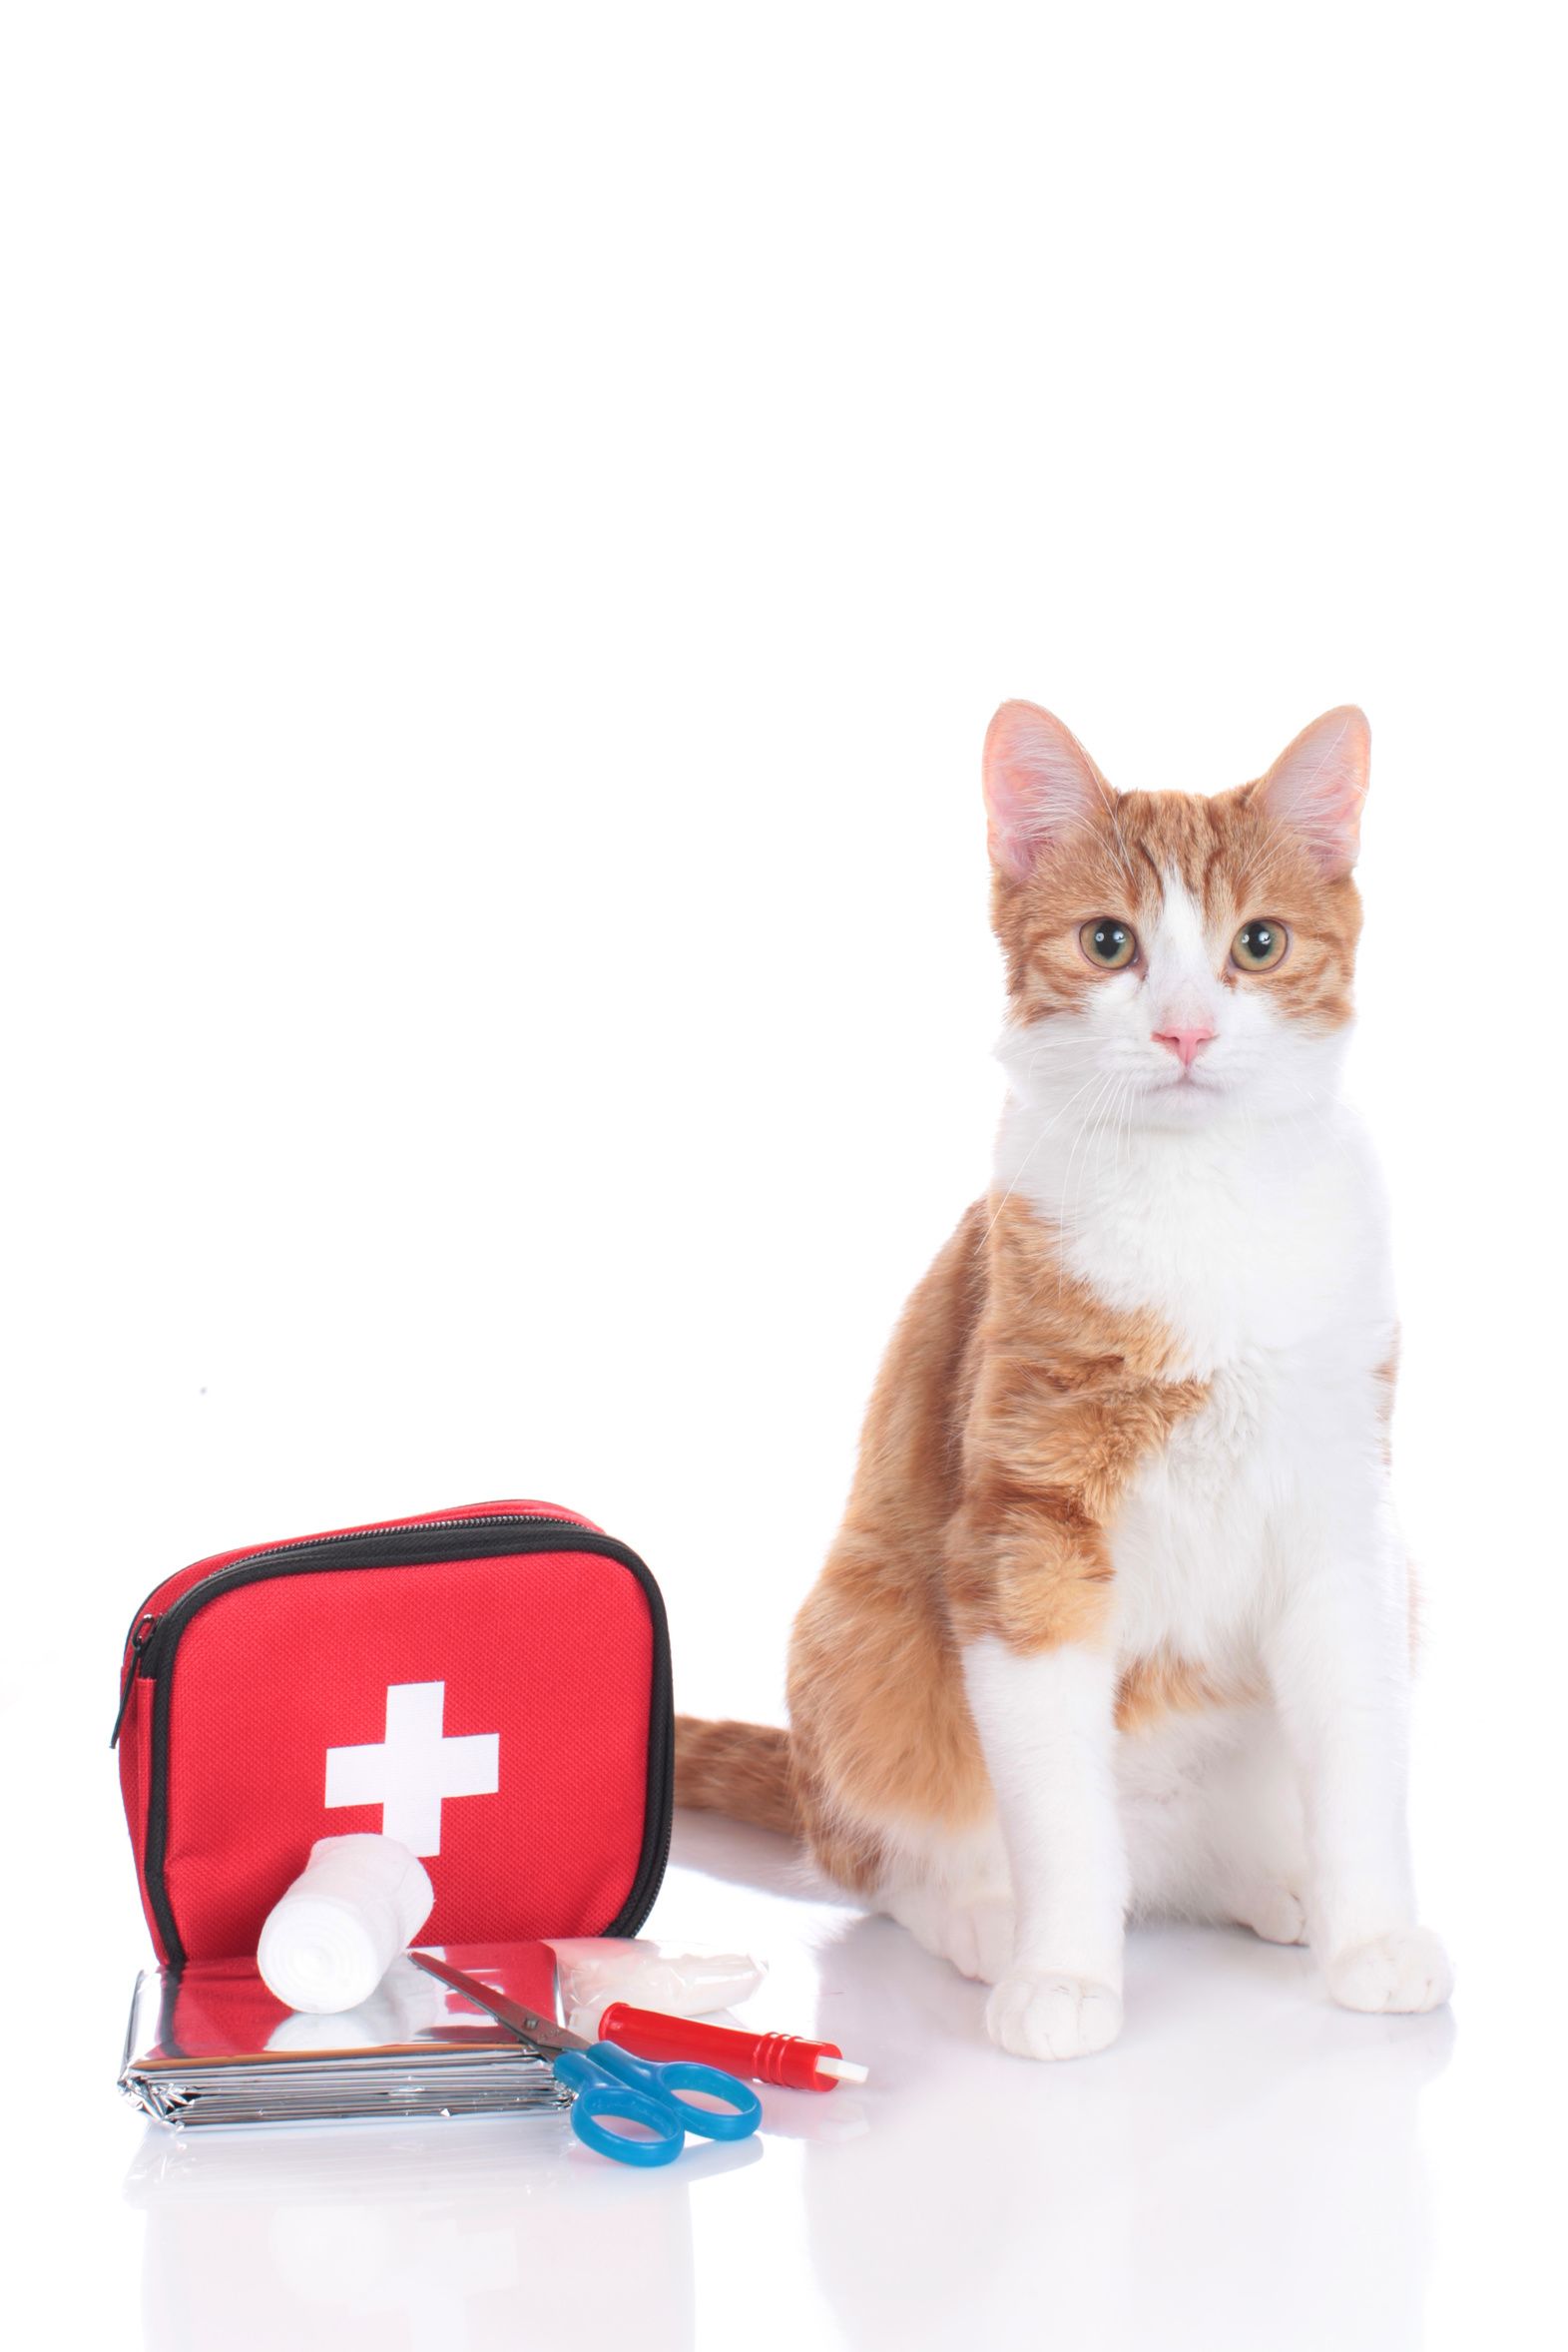 La trousse de premiers secours - Vétérinaires 2 Toute Urgence